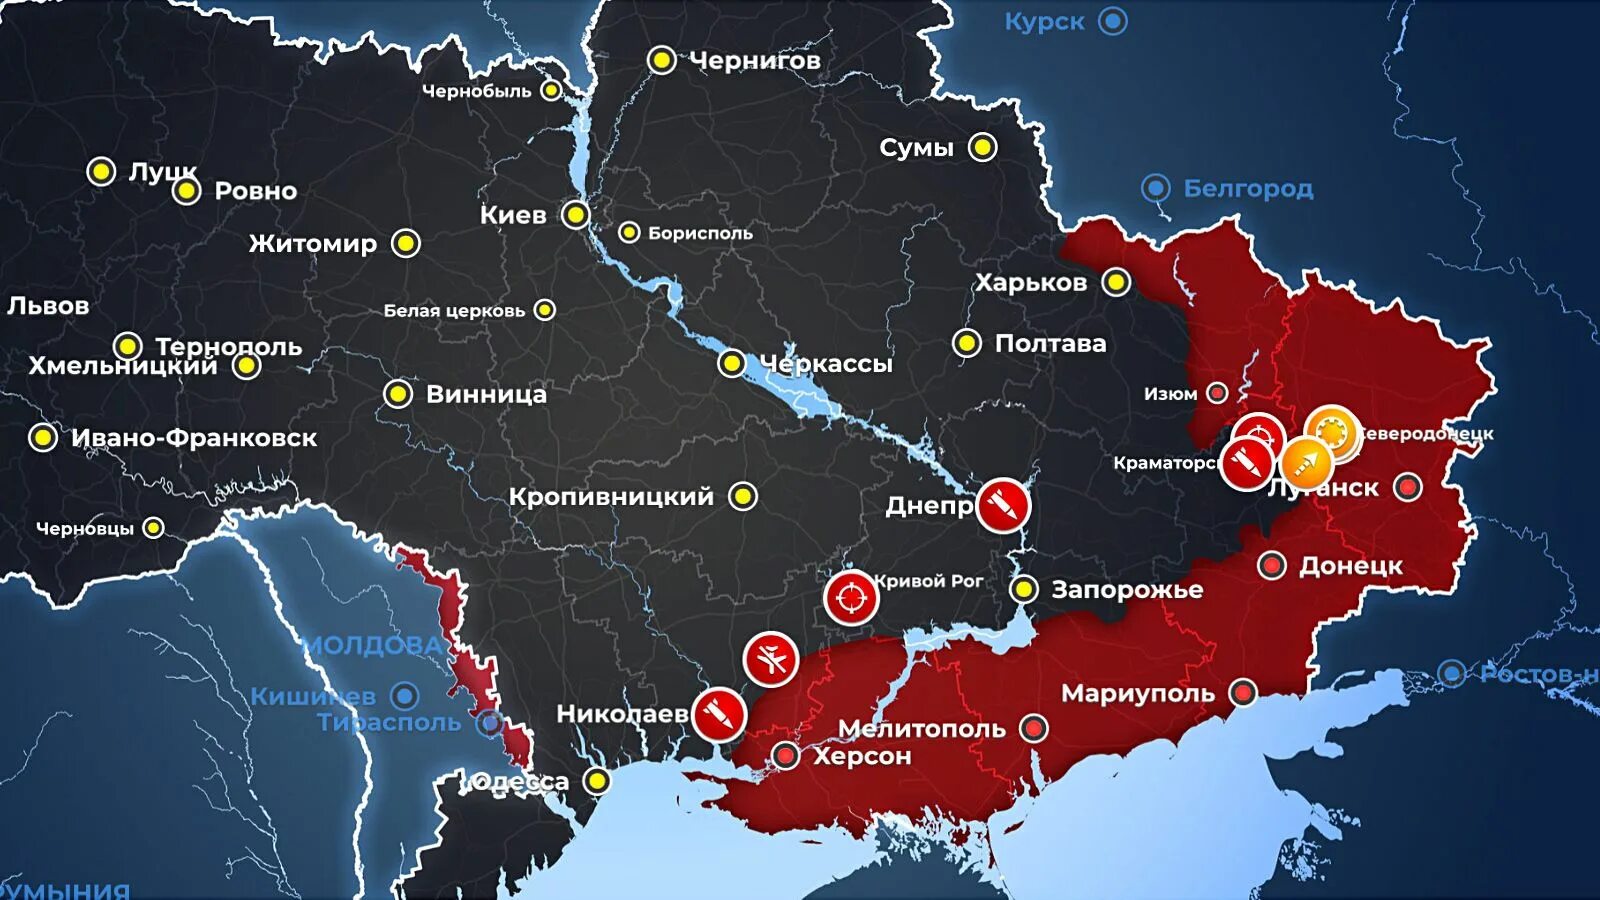 Карта боевых действий на Украине 23.03.2022. Карта захвата территории Украины. Карта боевых действий на Украине на сегодня 23.03.2022.